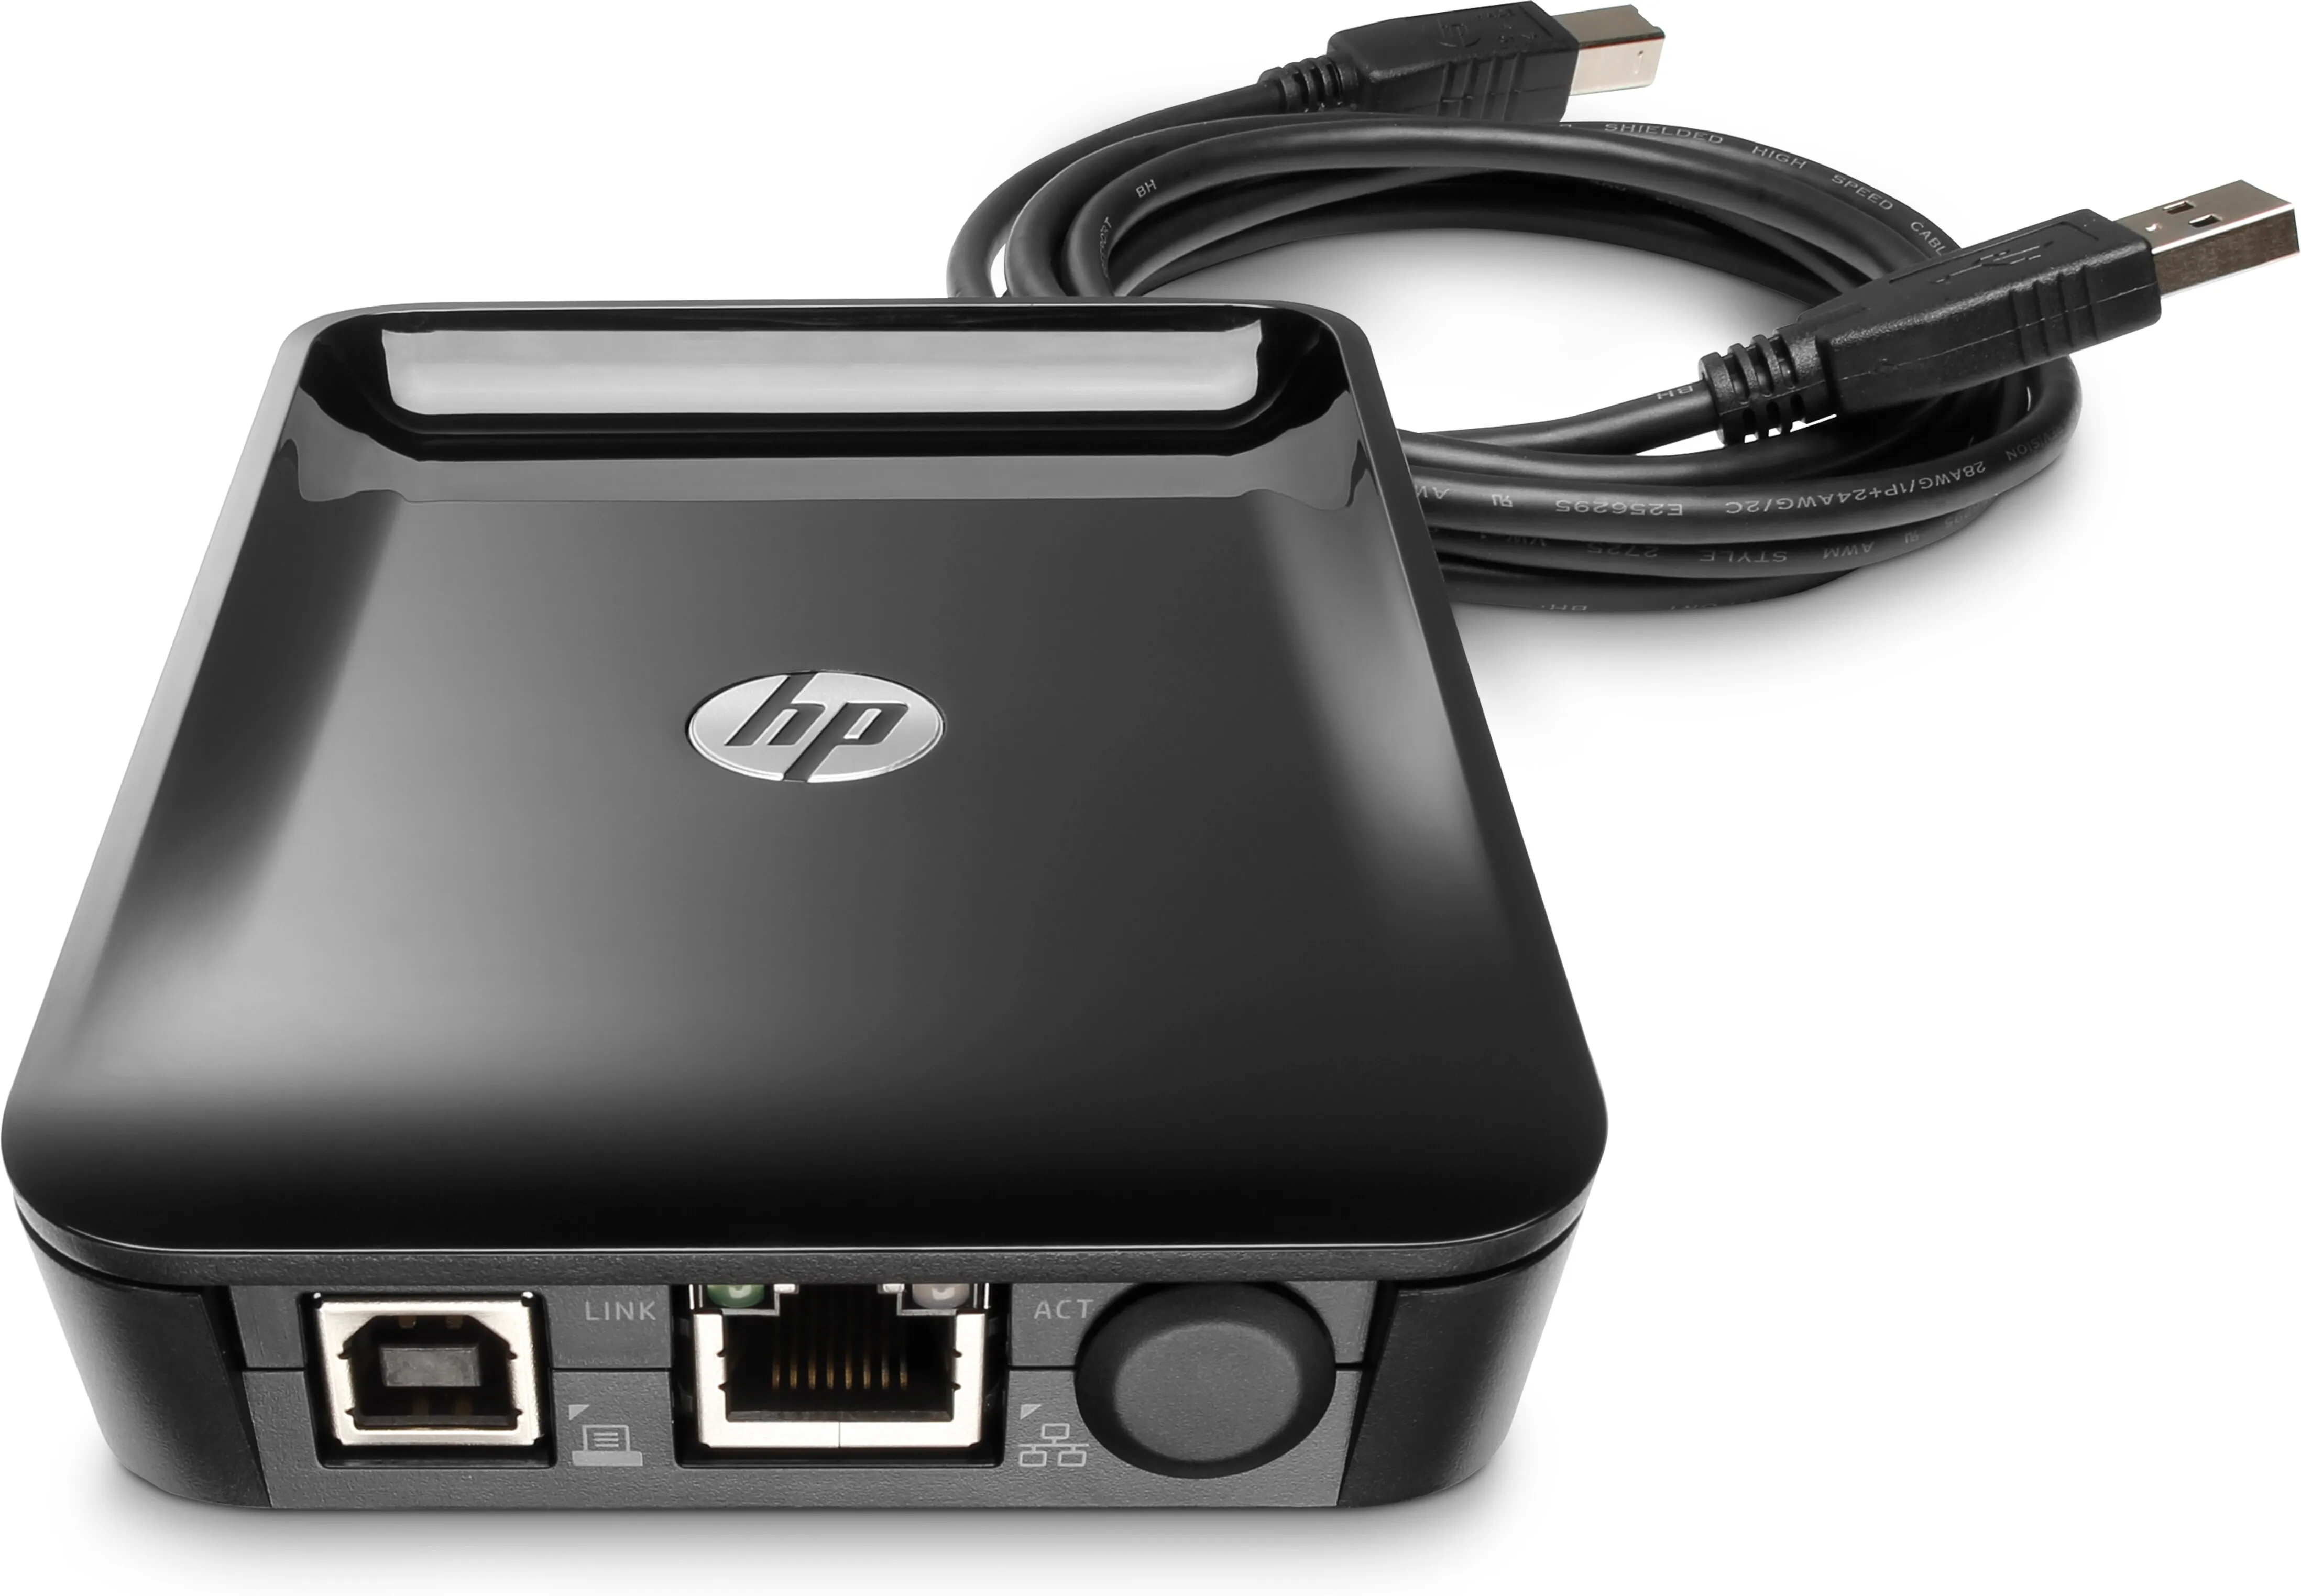 Vente HP Jetdirect LAN Accessory HP au meilleur prix - visuel 4